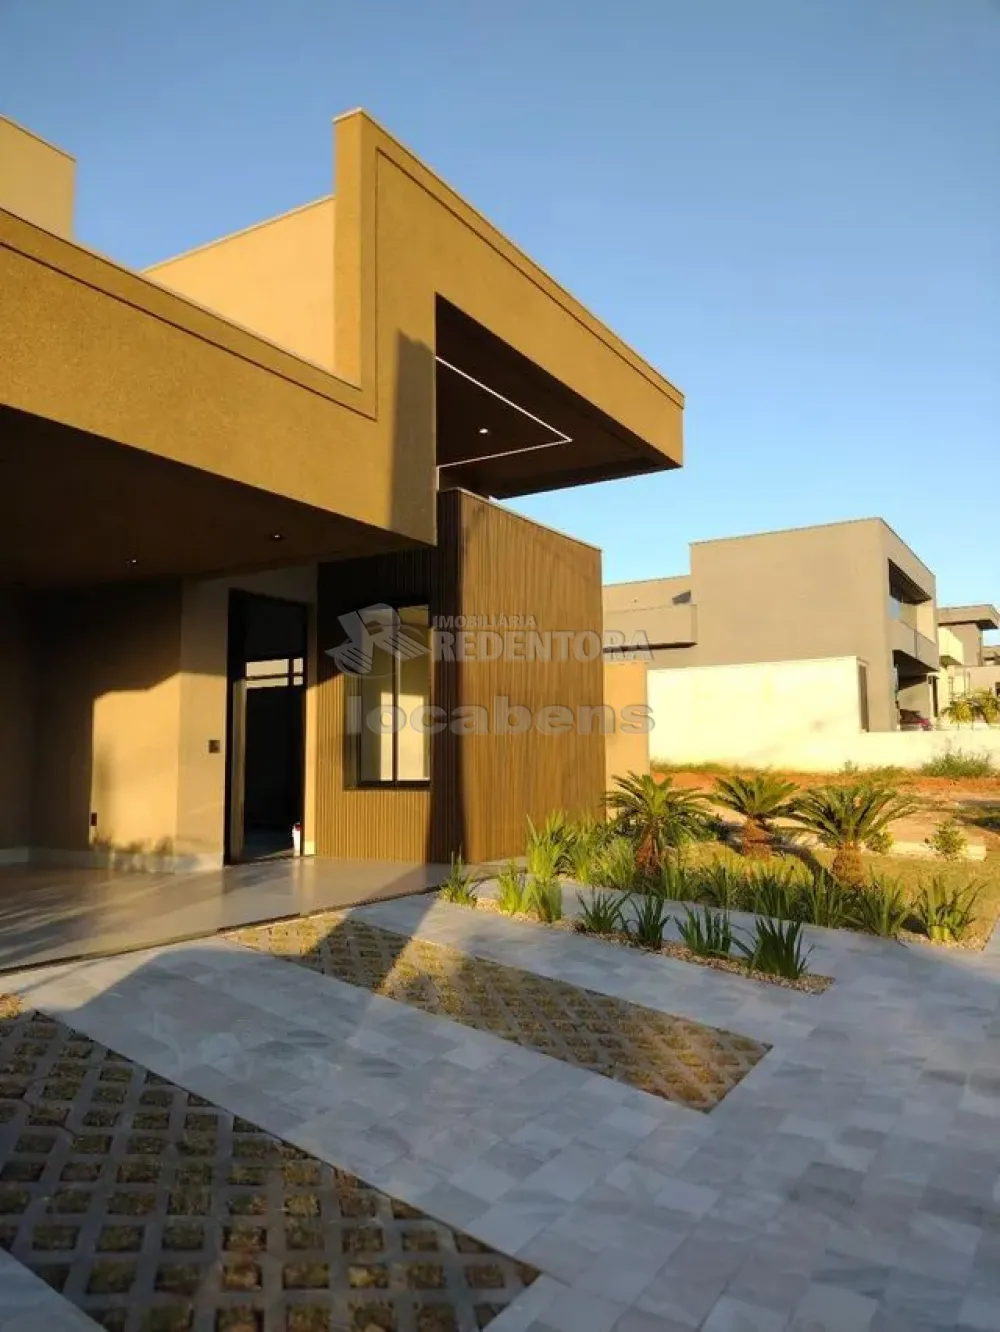 Comprar Casa / Condomínio em Mirassol apenas R$ 1.540.000,00 - Foto 3